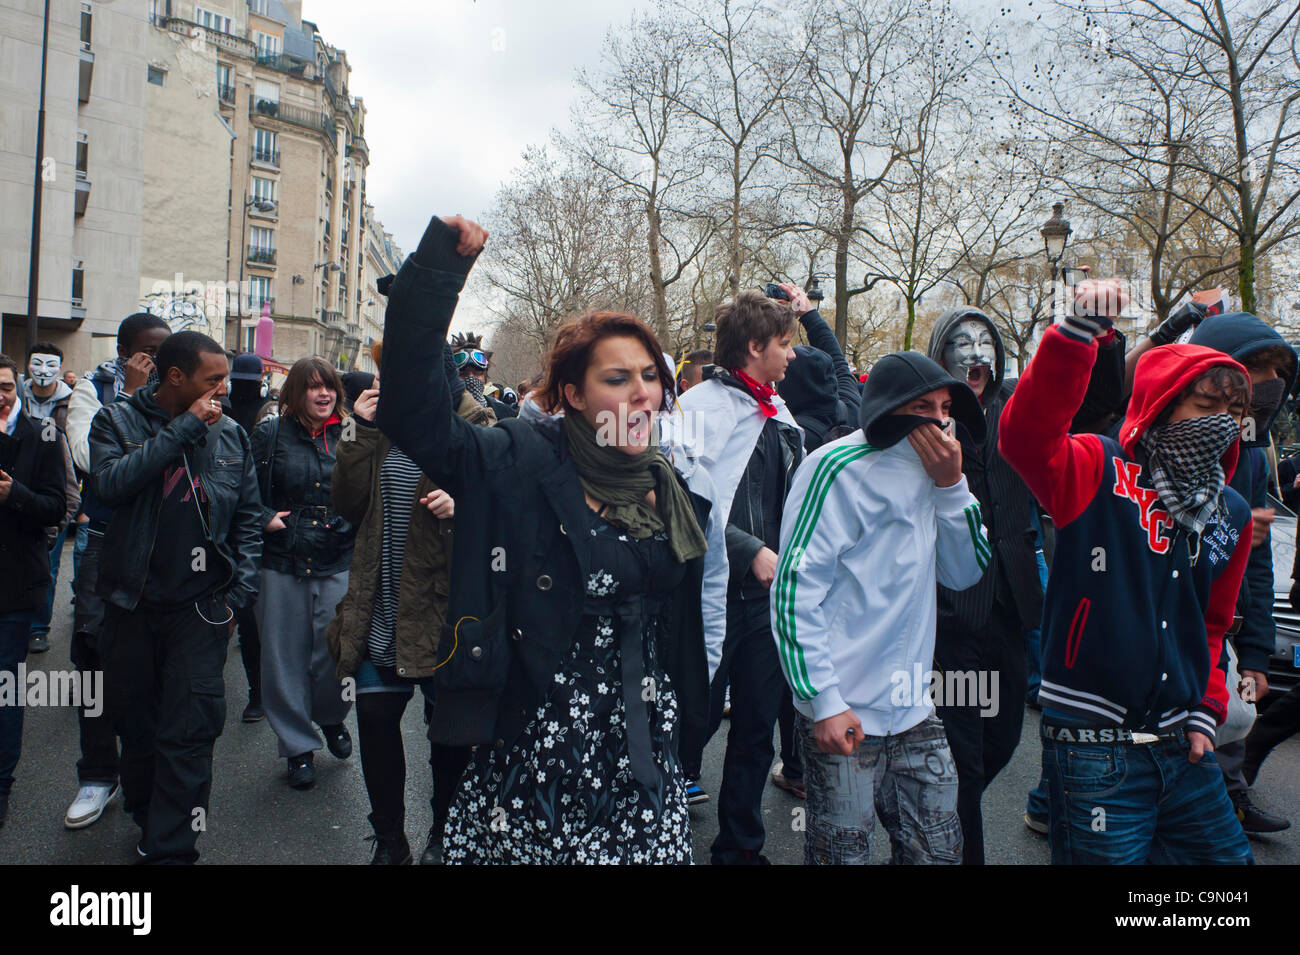 Wütende Menge Jugendliche Straße Anonyme Proteste gegen Internet-Piratengesetz, ACTA (Anti-Counterfeiting Trade Agreement), das "die Freiheit des Internets bedroht", Paris, Frankreich, Protest gegen den freien Handel, große Gruppe [Teenager] junge Menschen protestieren auf der march Street Stockfoto